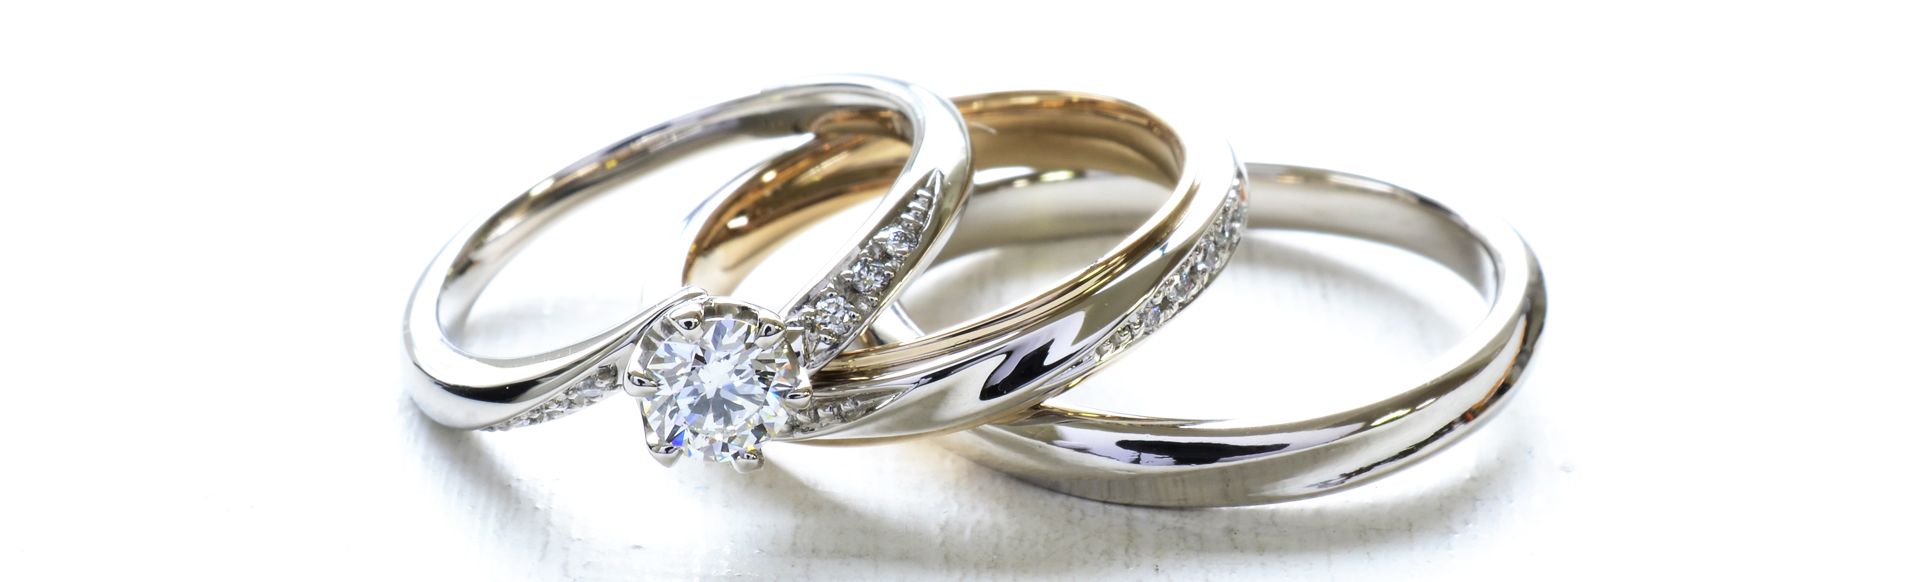 結婚指輪・婚約指輪 手作り同時製作コース